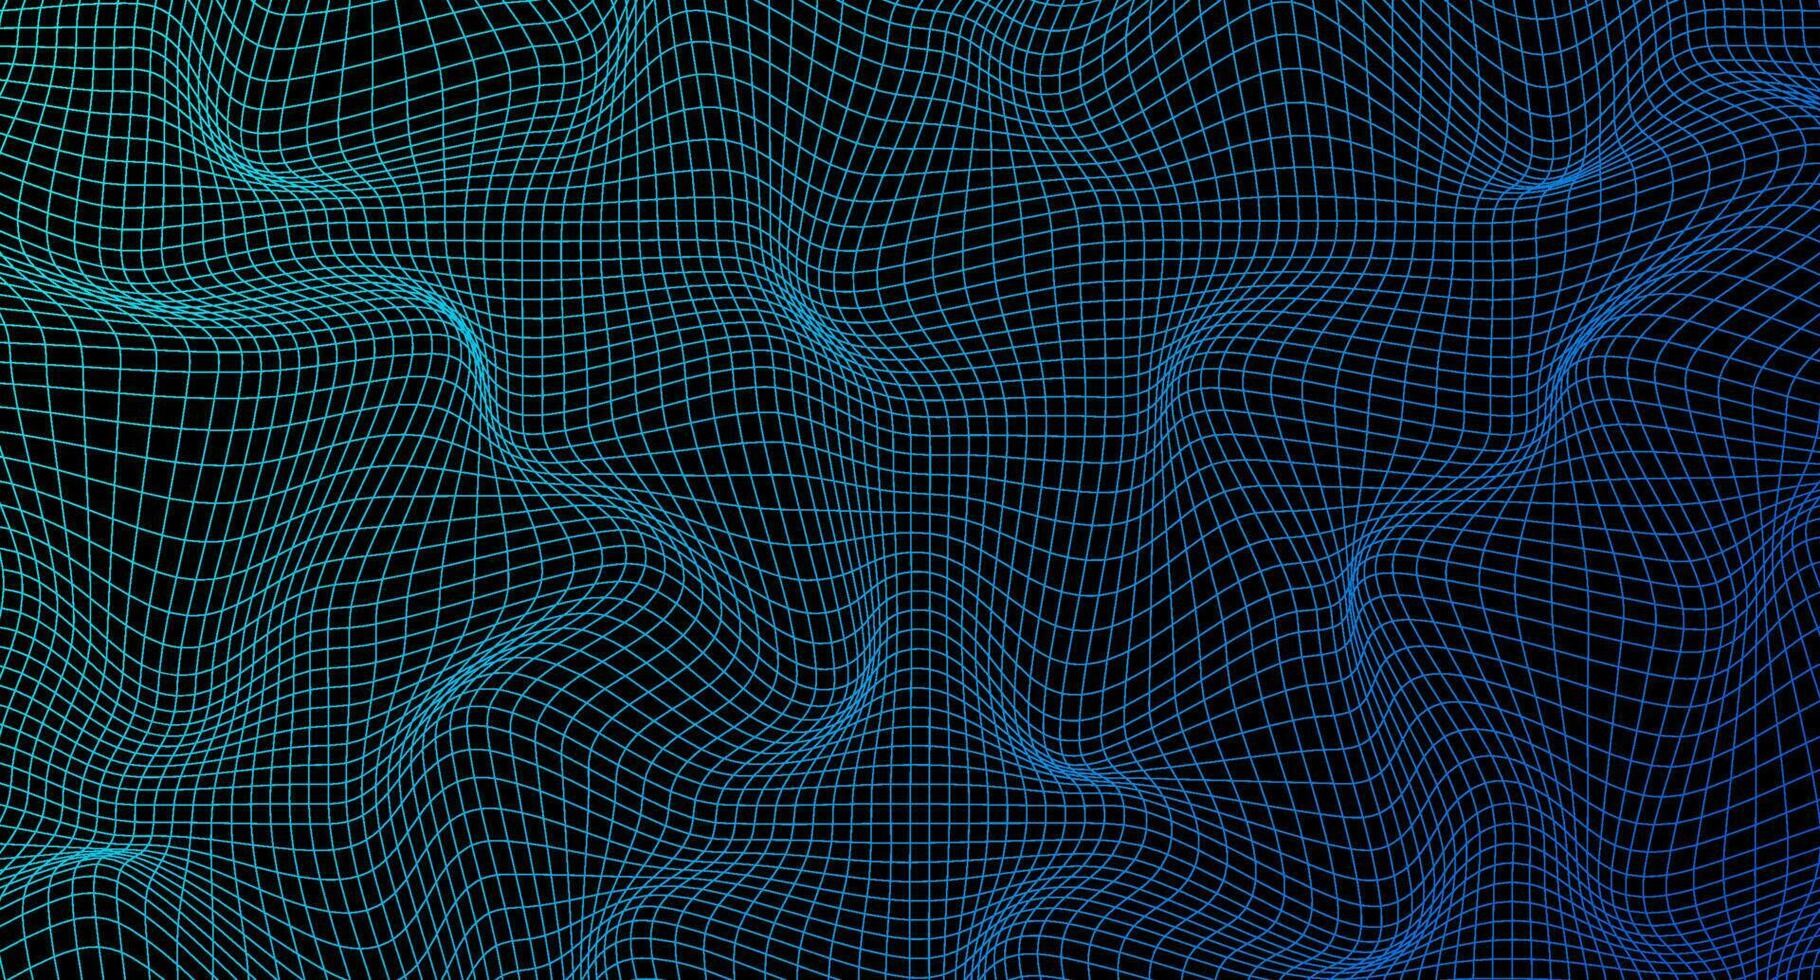 abstrakt vågig 3d maska. geometrisk dynamisk Vinka. förvrängd fyrkant rutnät. skev maska textur. trådmodell Vinka geometri rutnät. vektor illustration